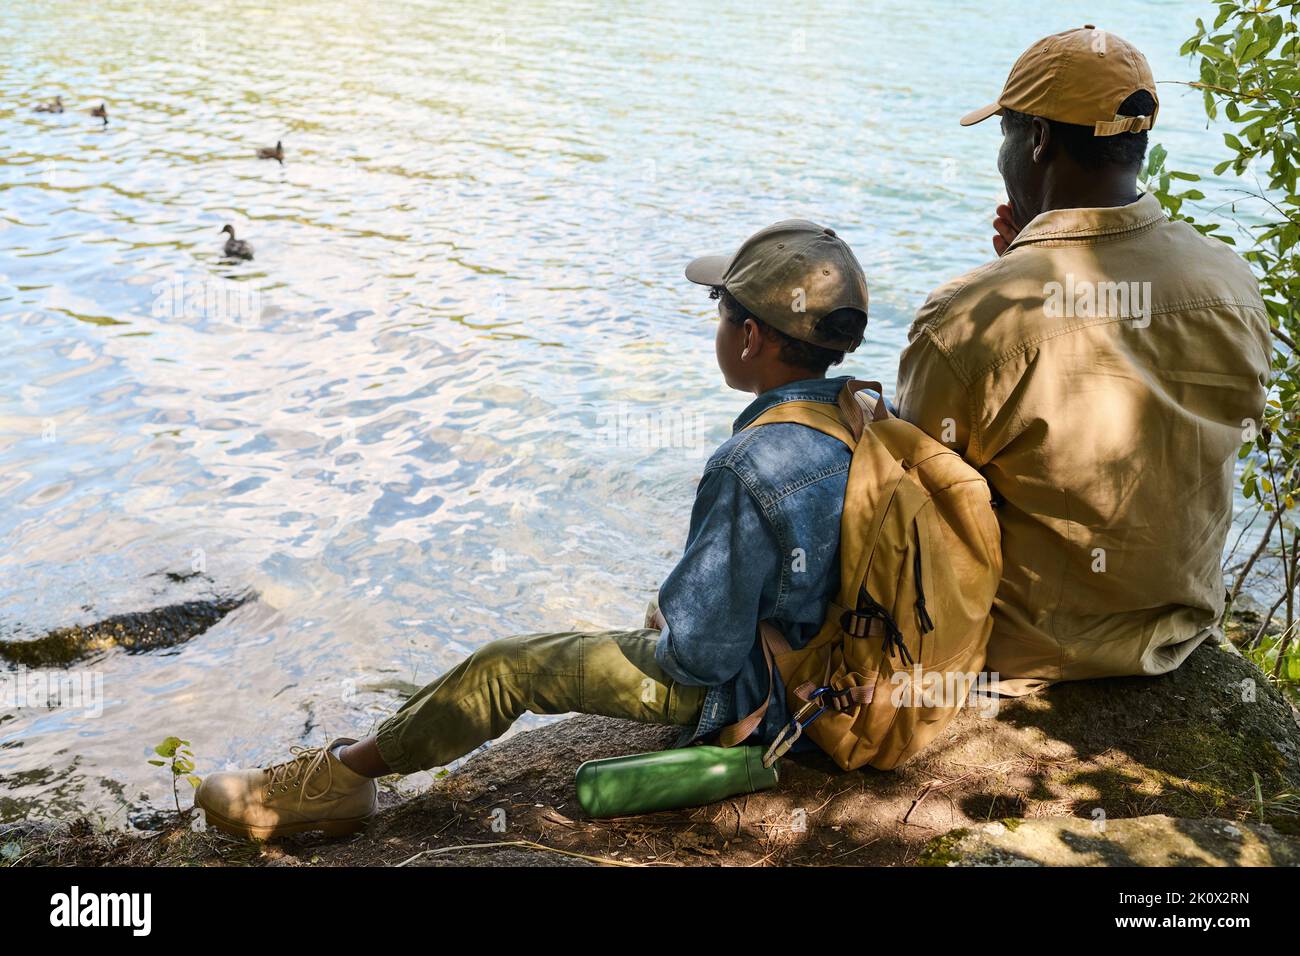 Rückansicht des Jugendlichen afroamerikanischen Jungen mit Rucksack und seines Großvaters, der während des Stocks vor einem See oder Fluss sitzt Stockfoto